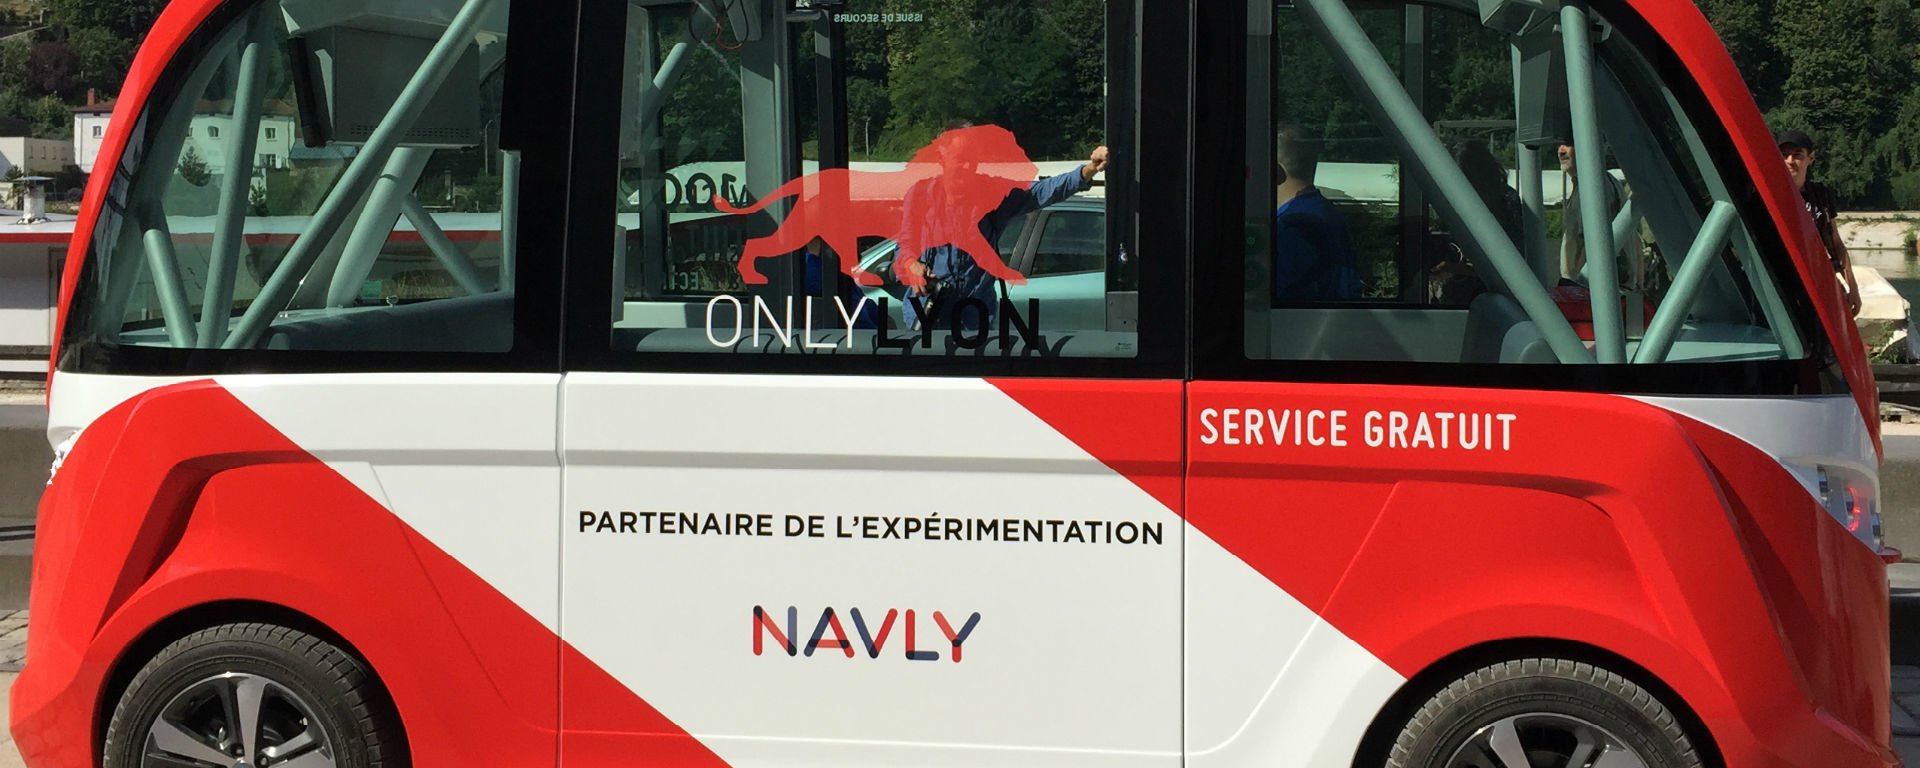 Navly, minibus sans conducteur à Lyon